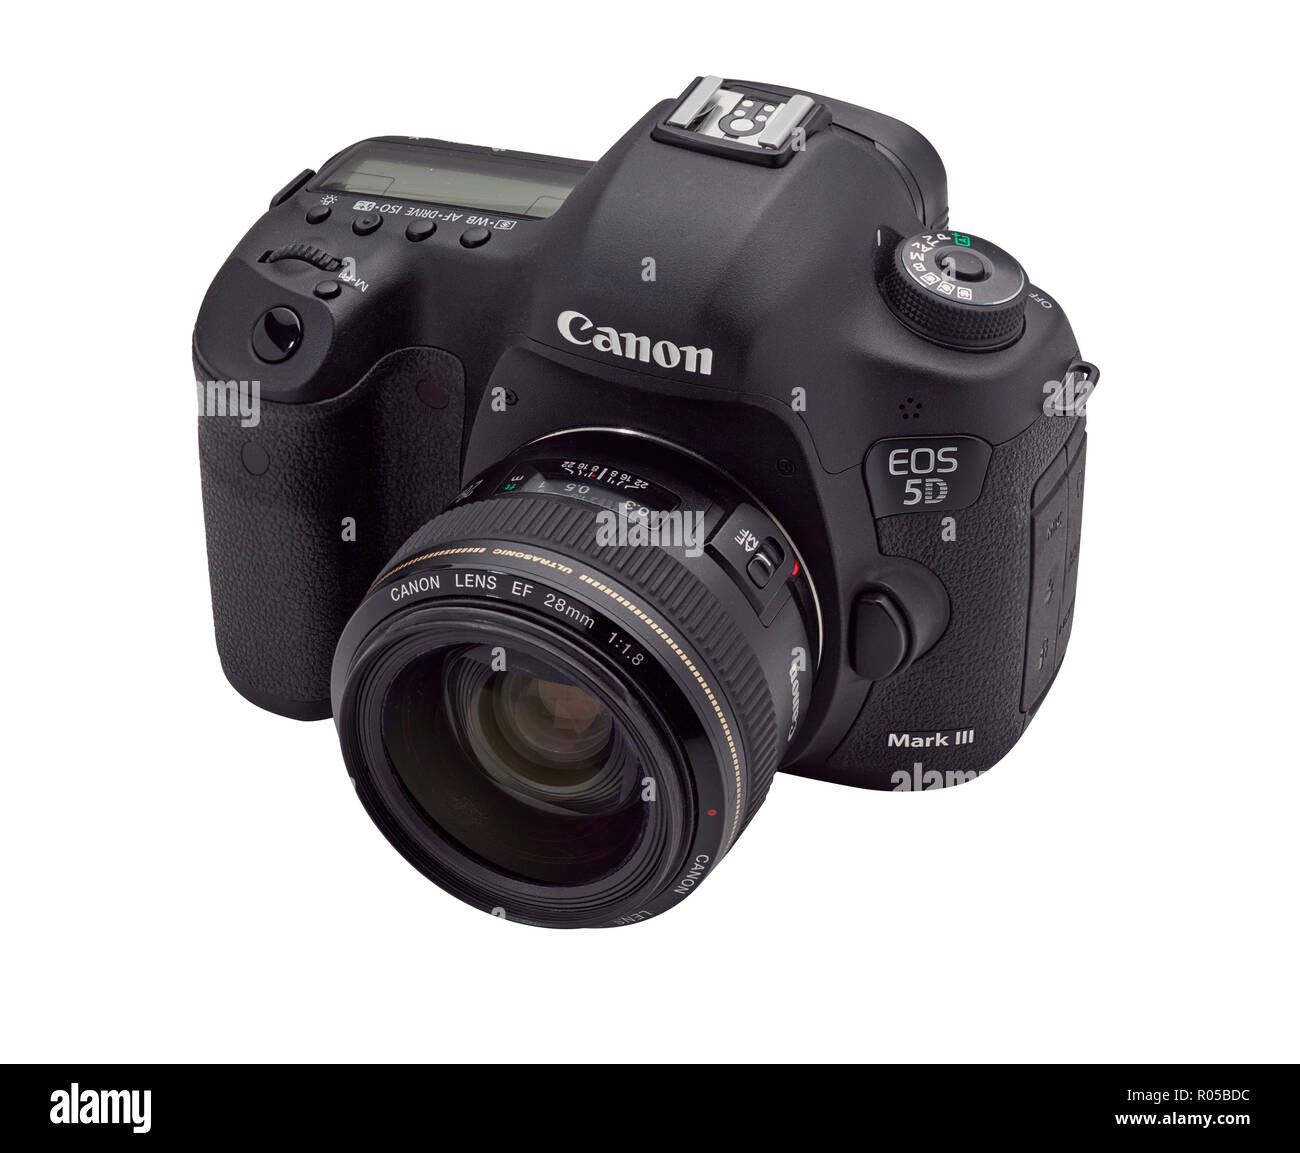 Fotocamera reflex digitale Canon EOS 5D MkIII fotocamera con 28mm F1.8 obiettivo grandangolare su uno sfondo bianco. Foto Stock